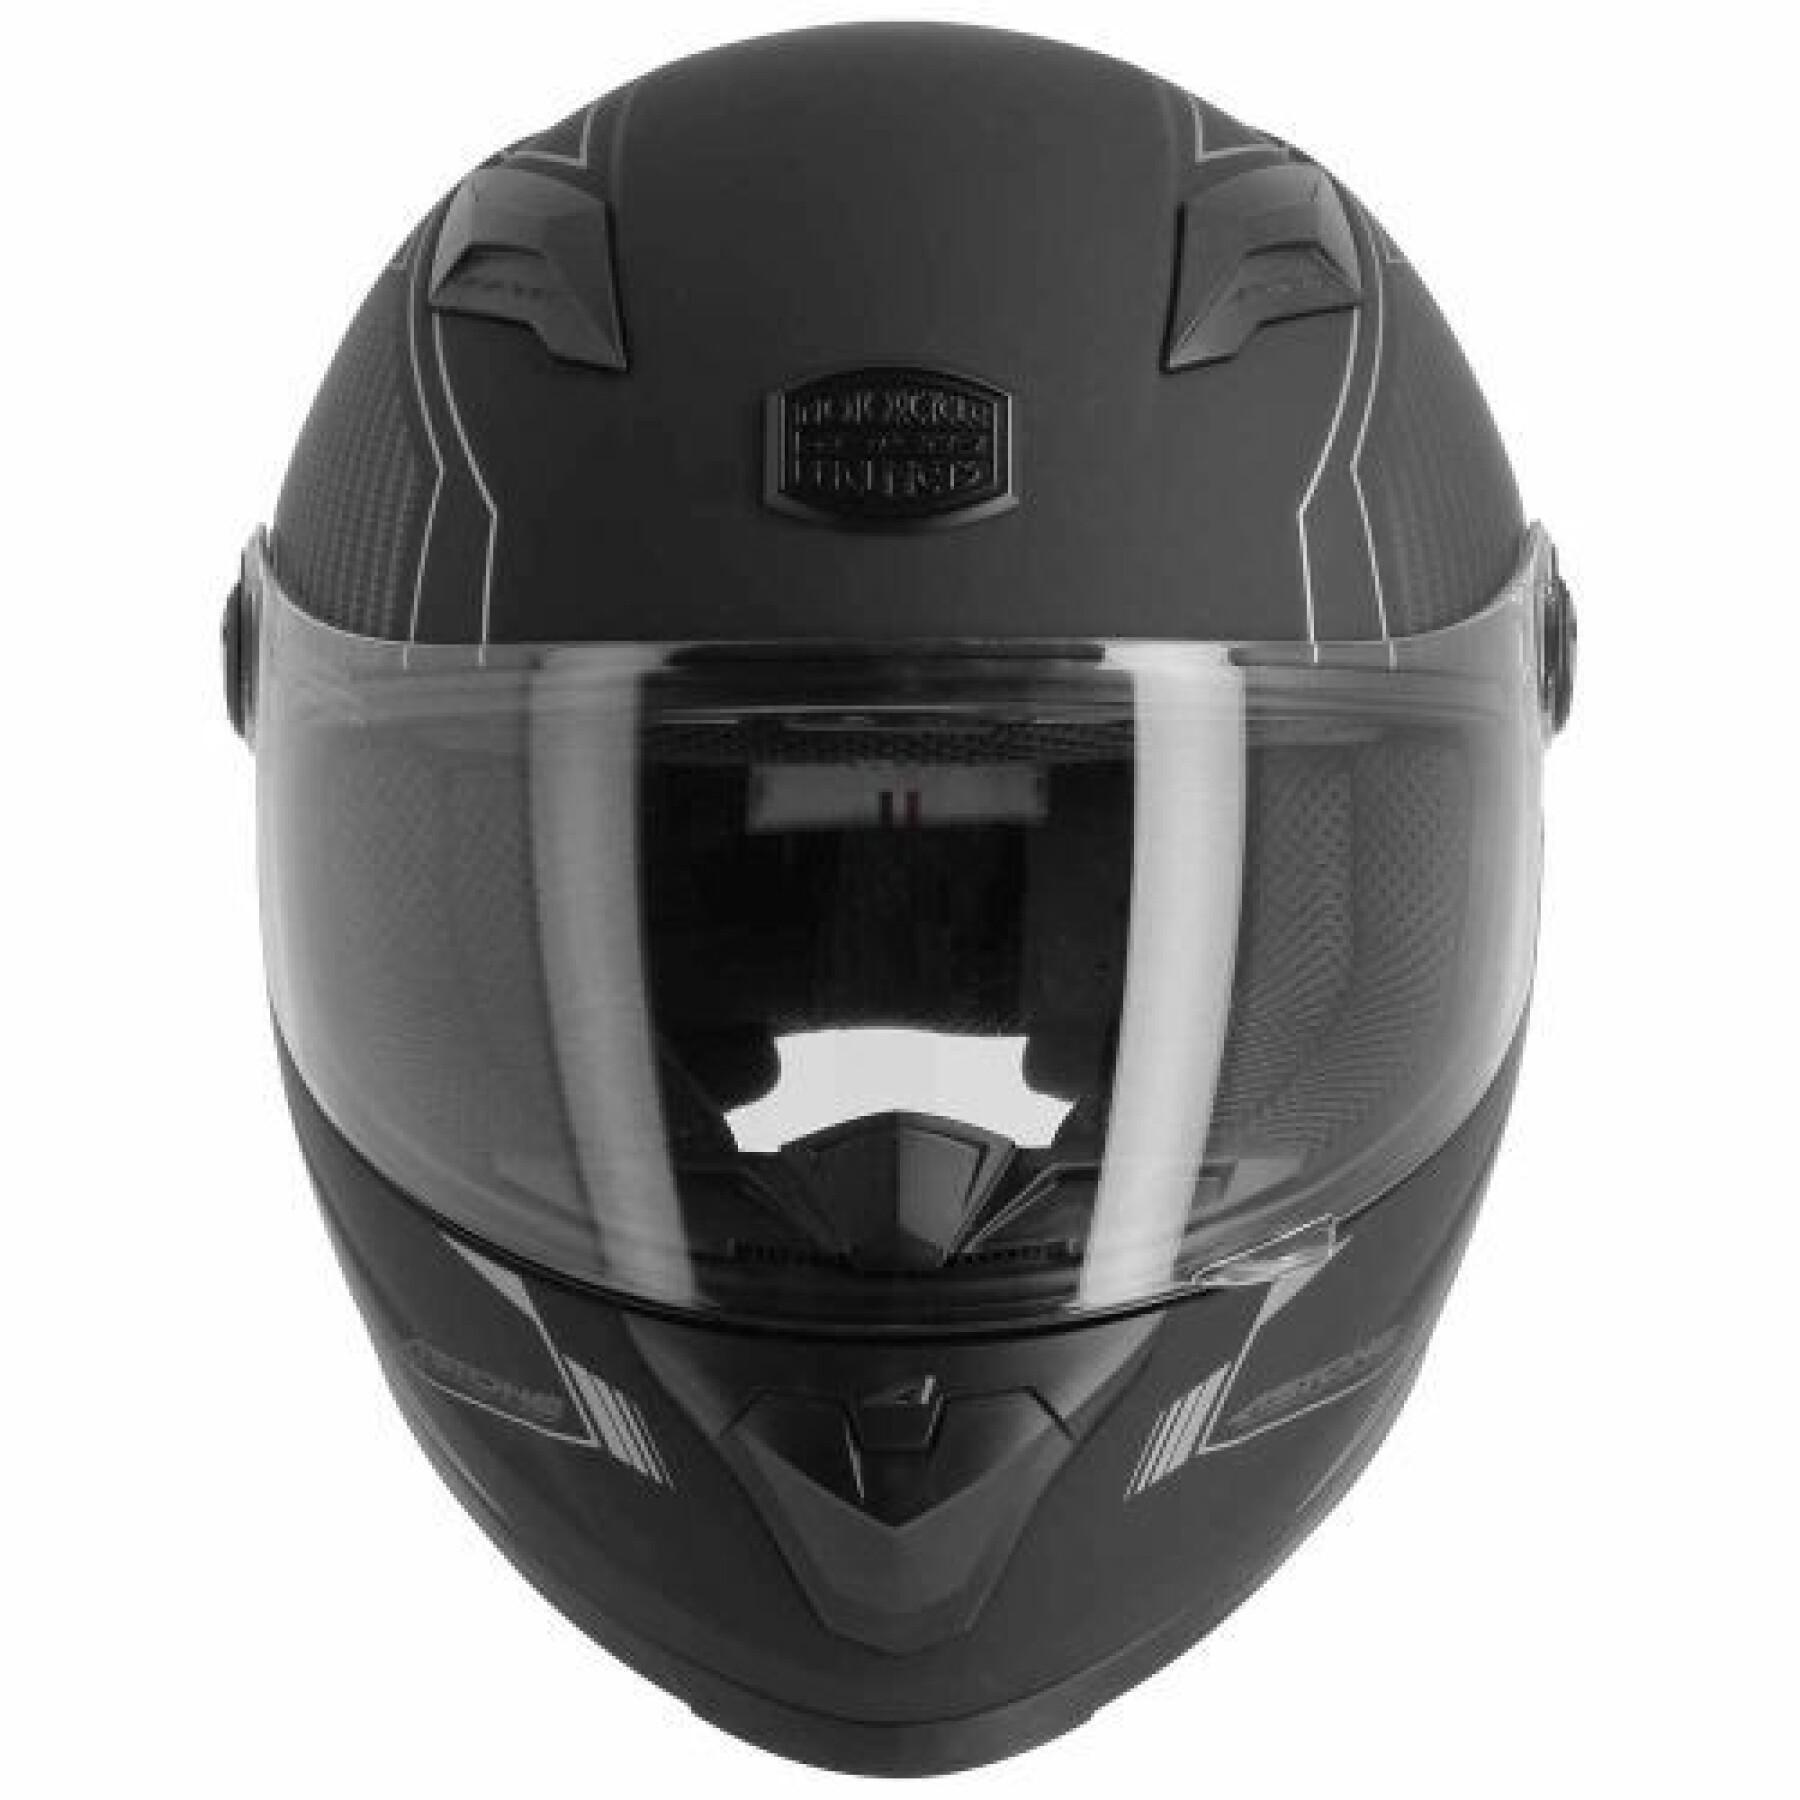 Full face motorcycle helmet Astone Gt2 Karbon